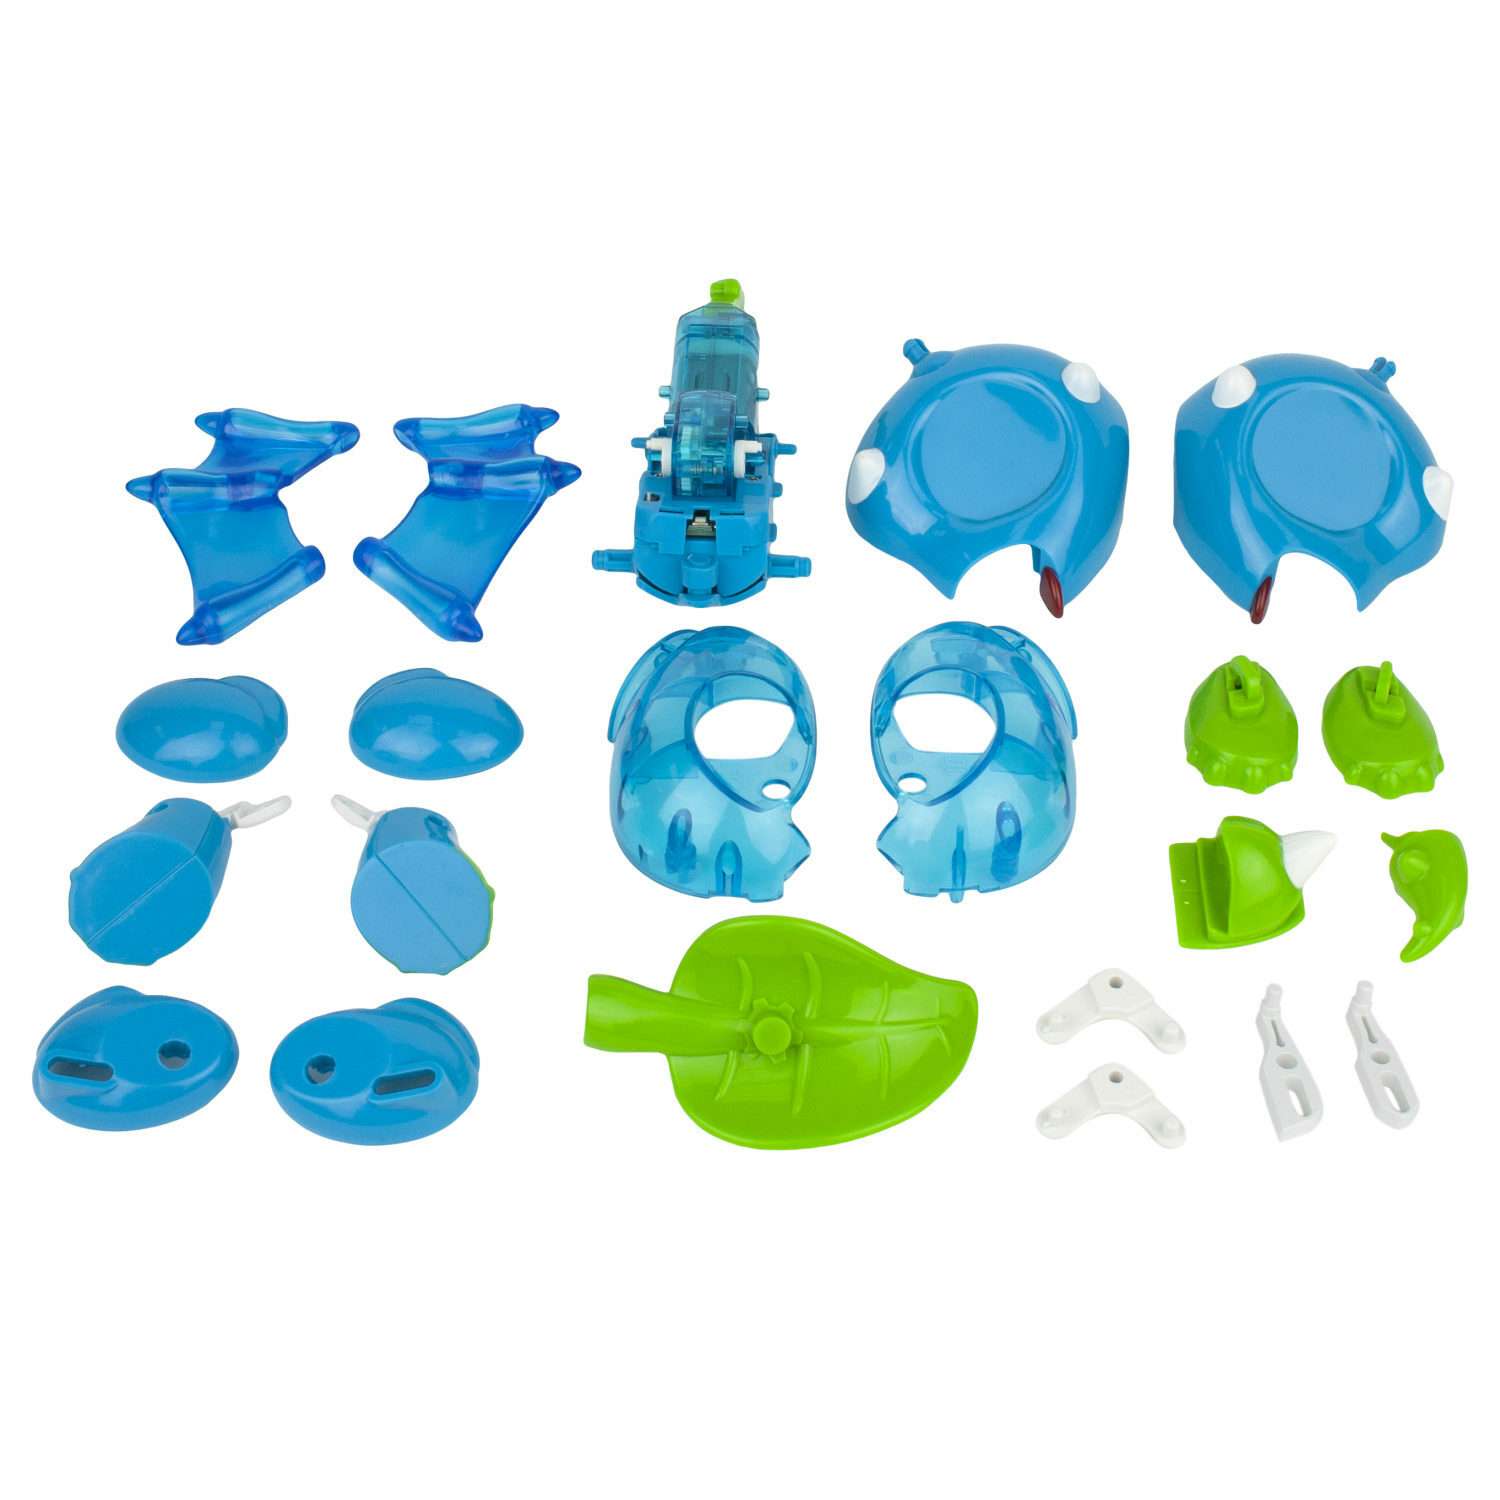 Интерактивная игрушка Robo Life Динозаврик сборная модель конструктор - фото 4